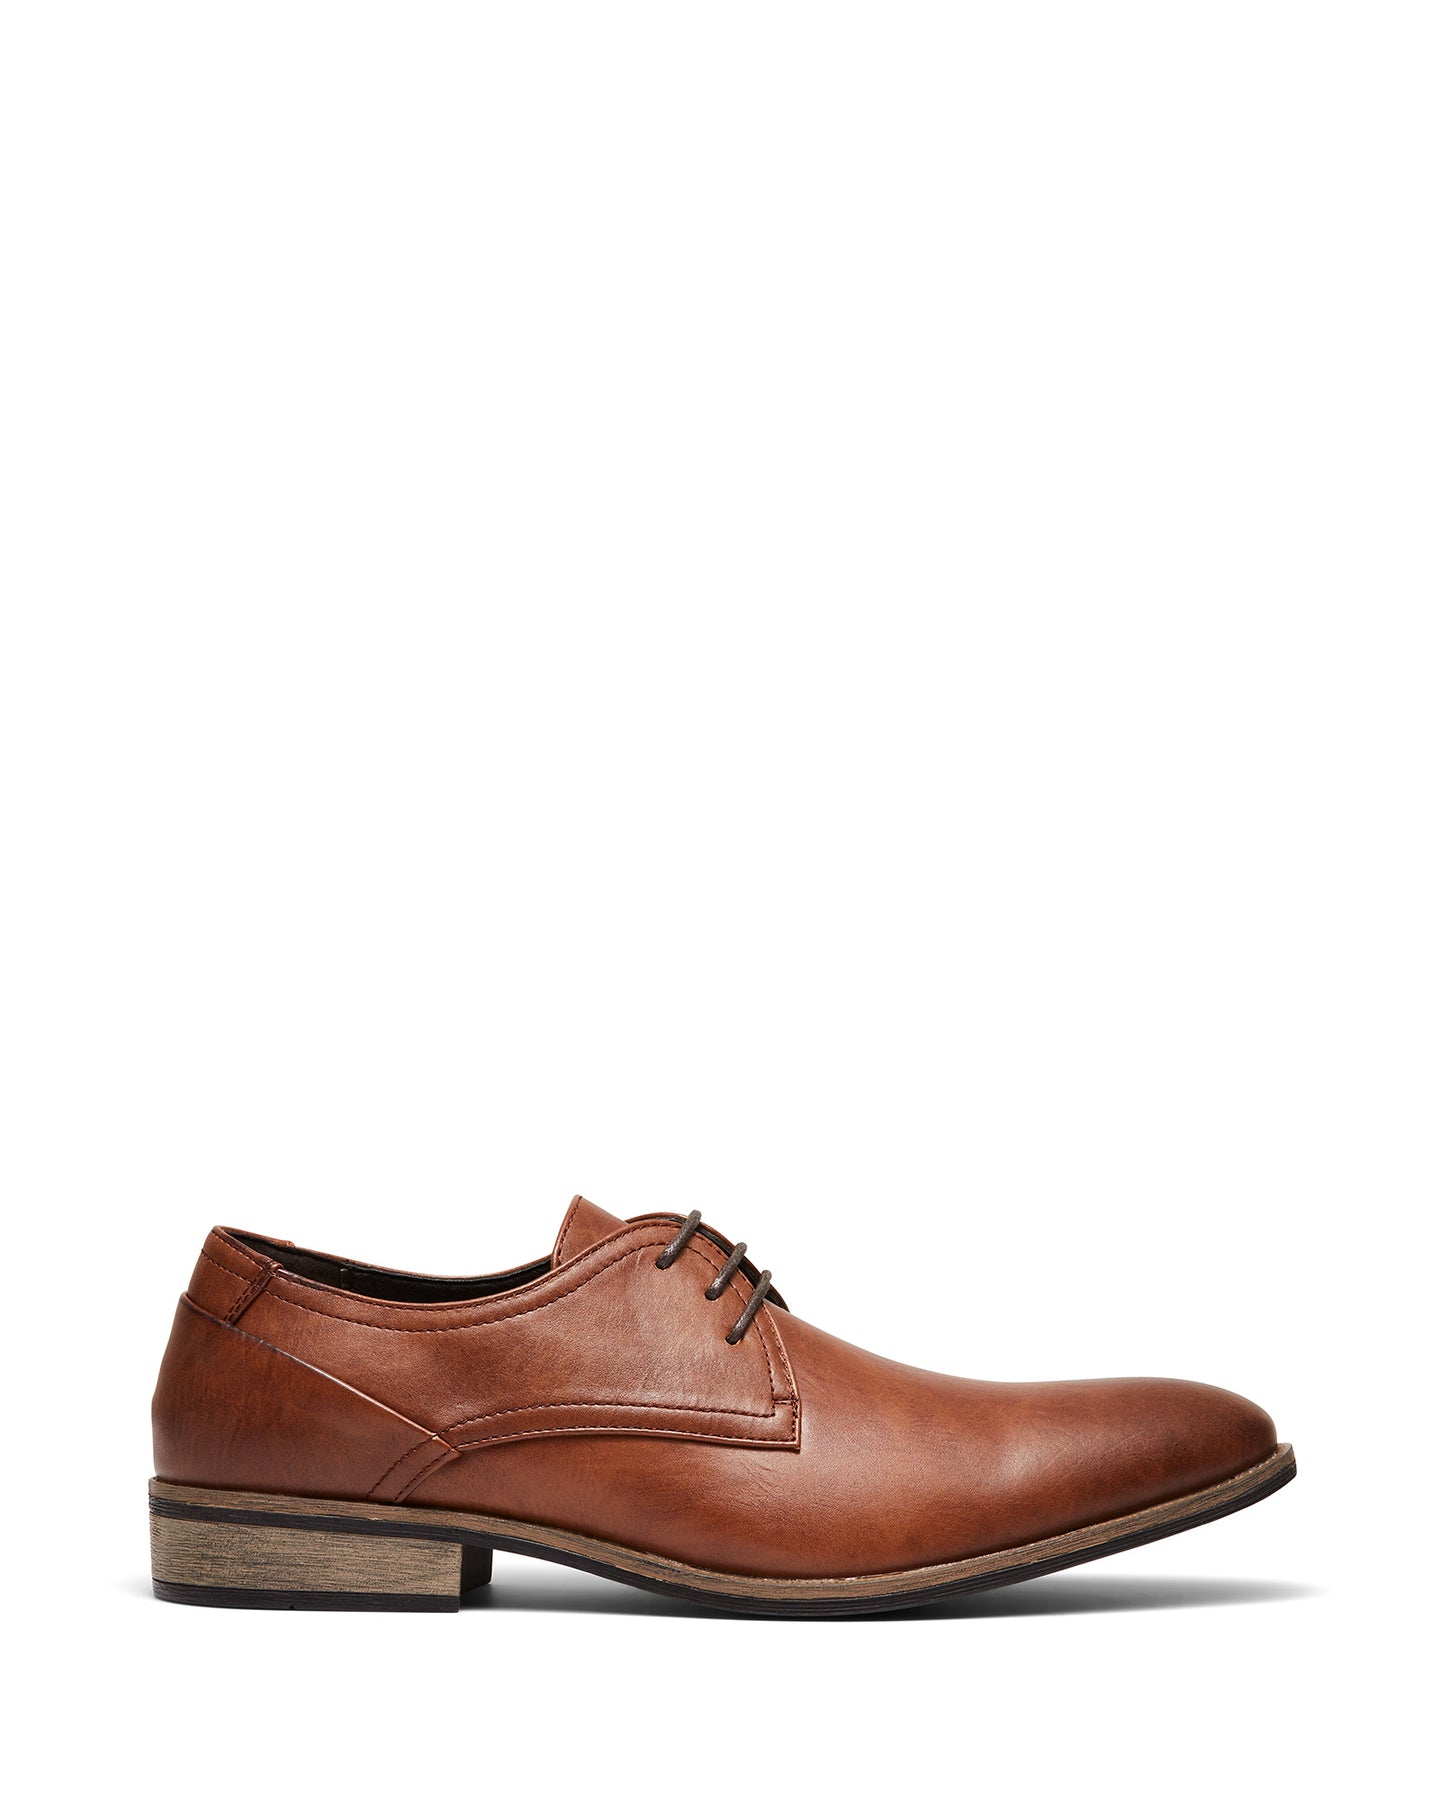 Uncut Shoes Rhine Tan | Men's Dress Shoe | Derby | Lace Up | Work